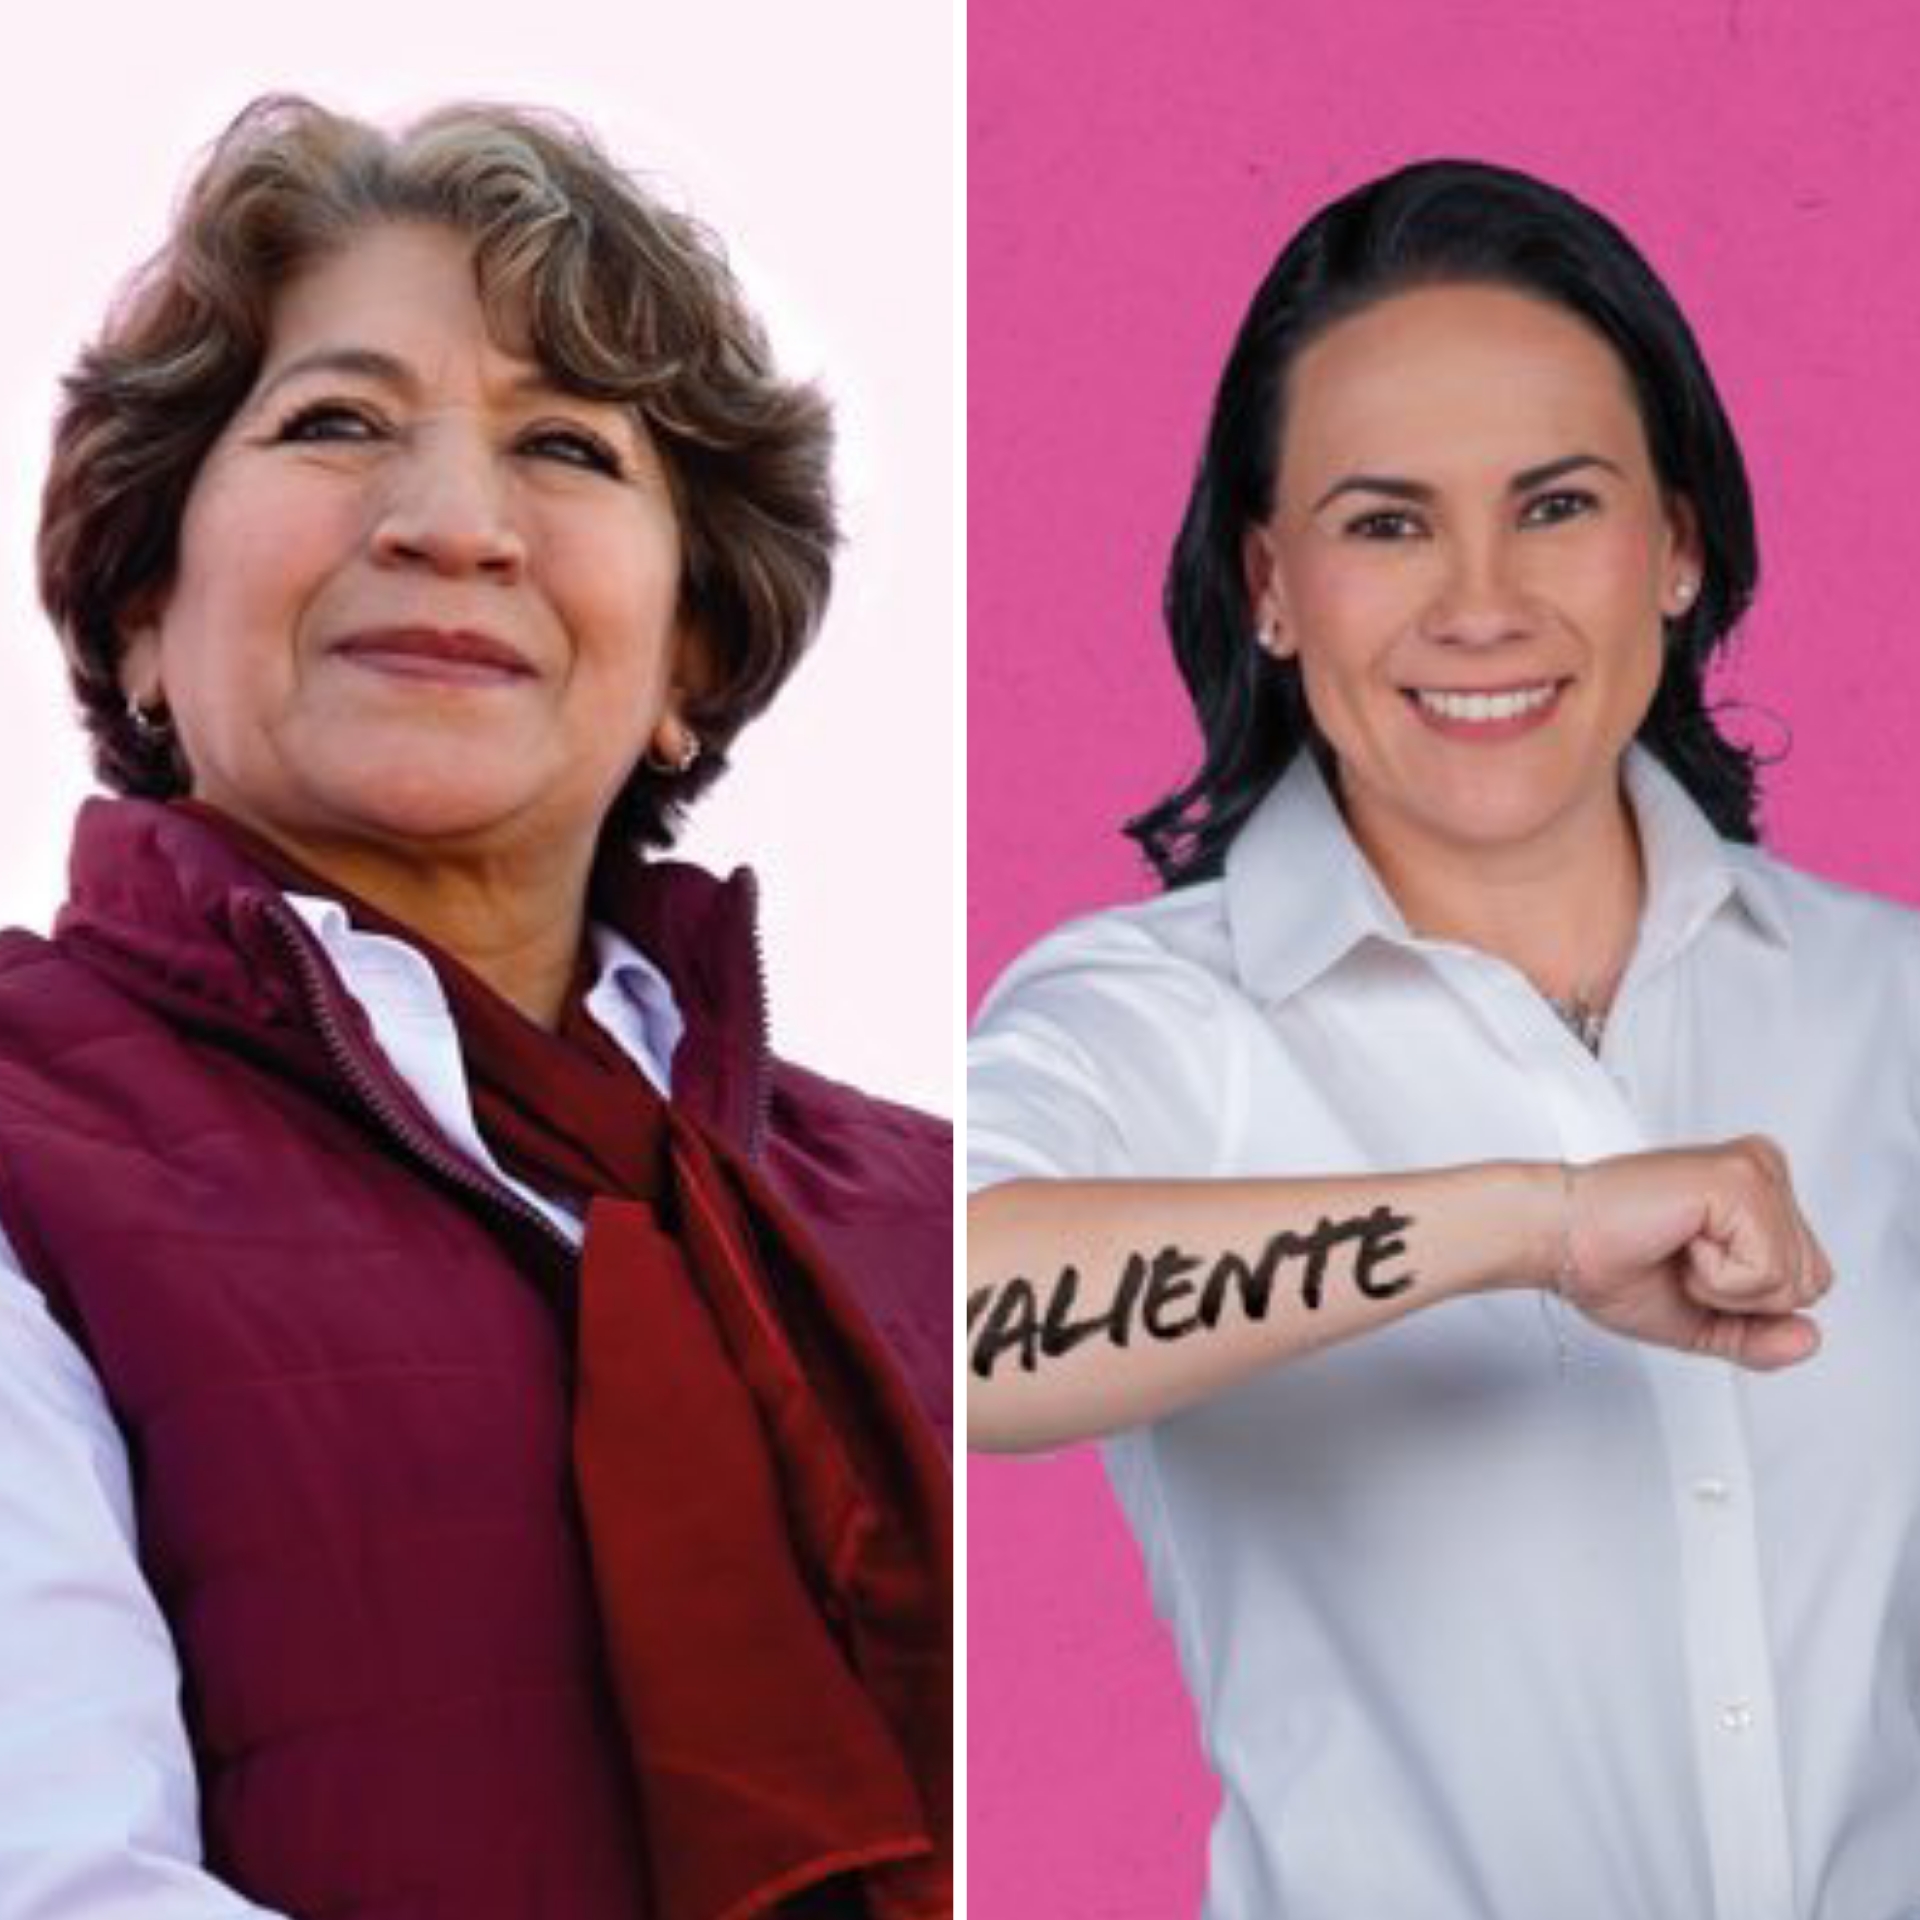 Estos son los temas del segundo debate entre Delfina Gómez y Ale del Moral #regionmx